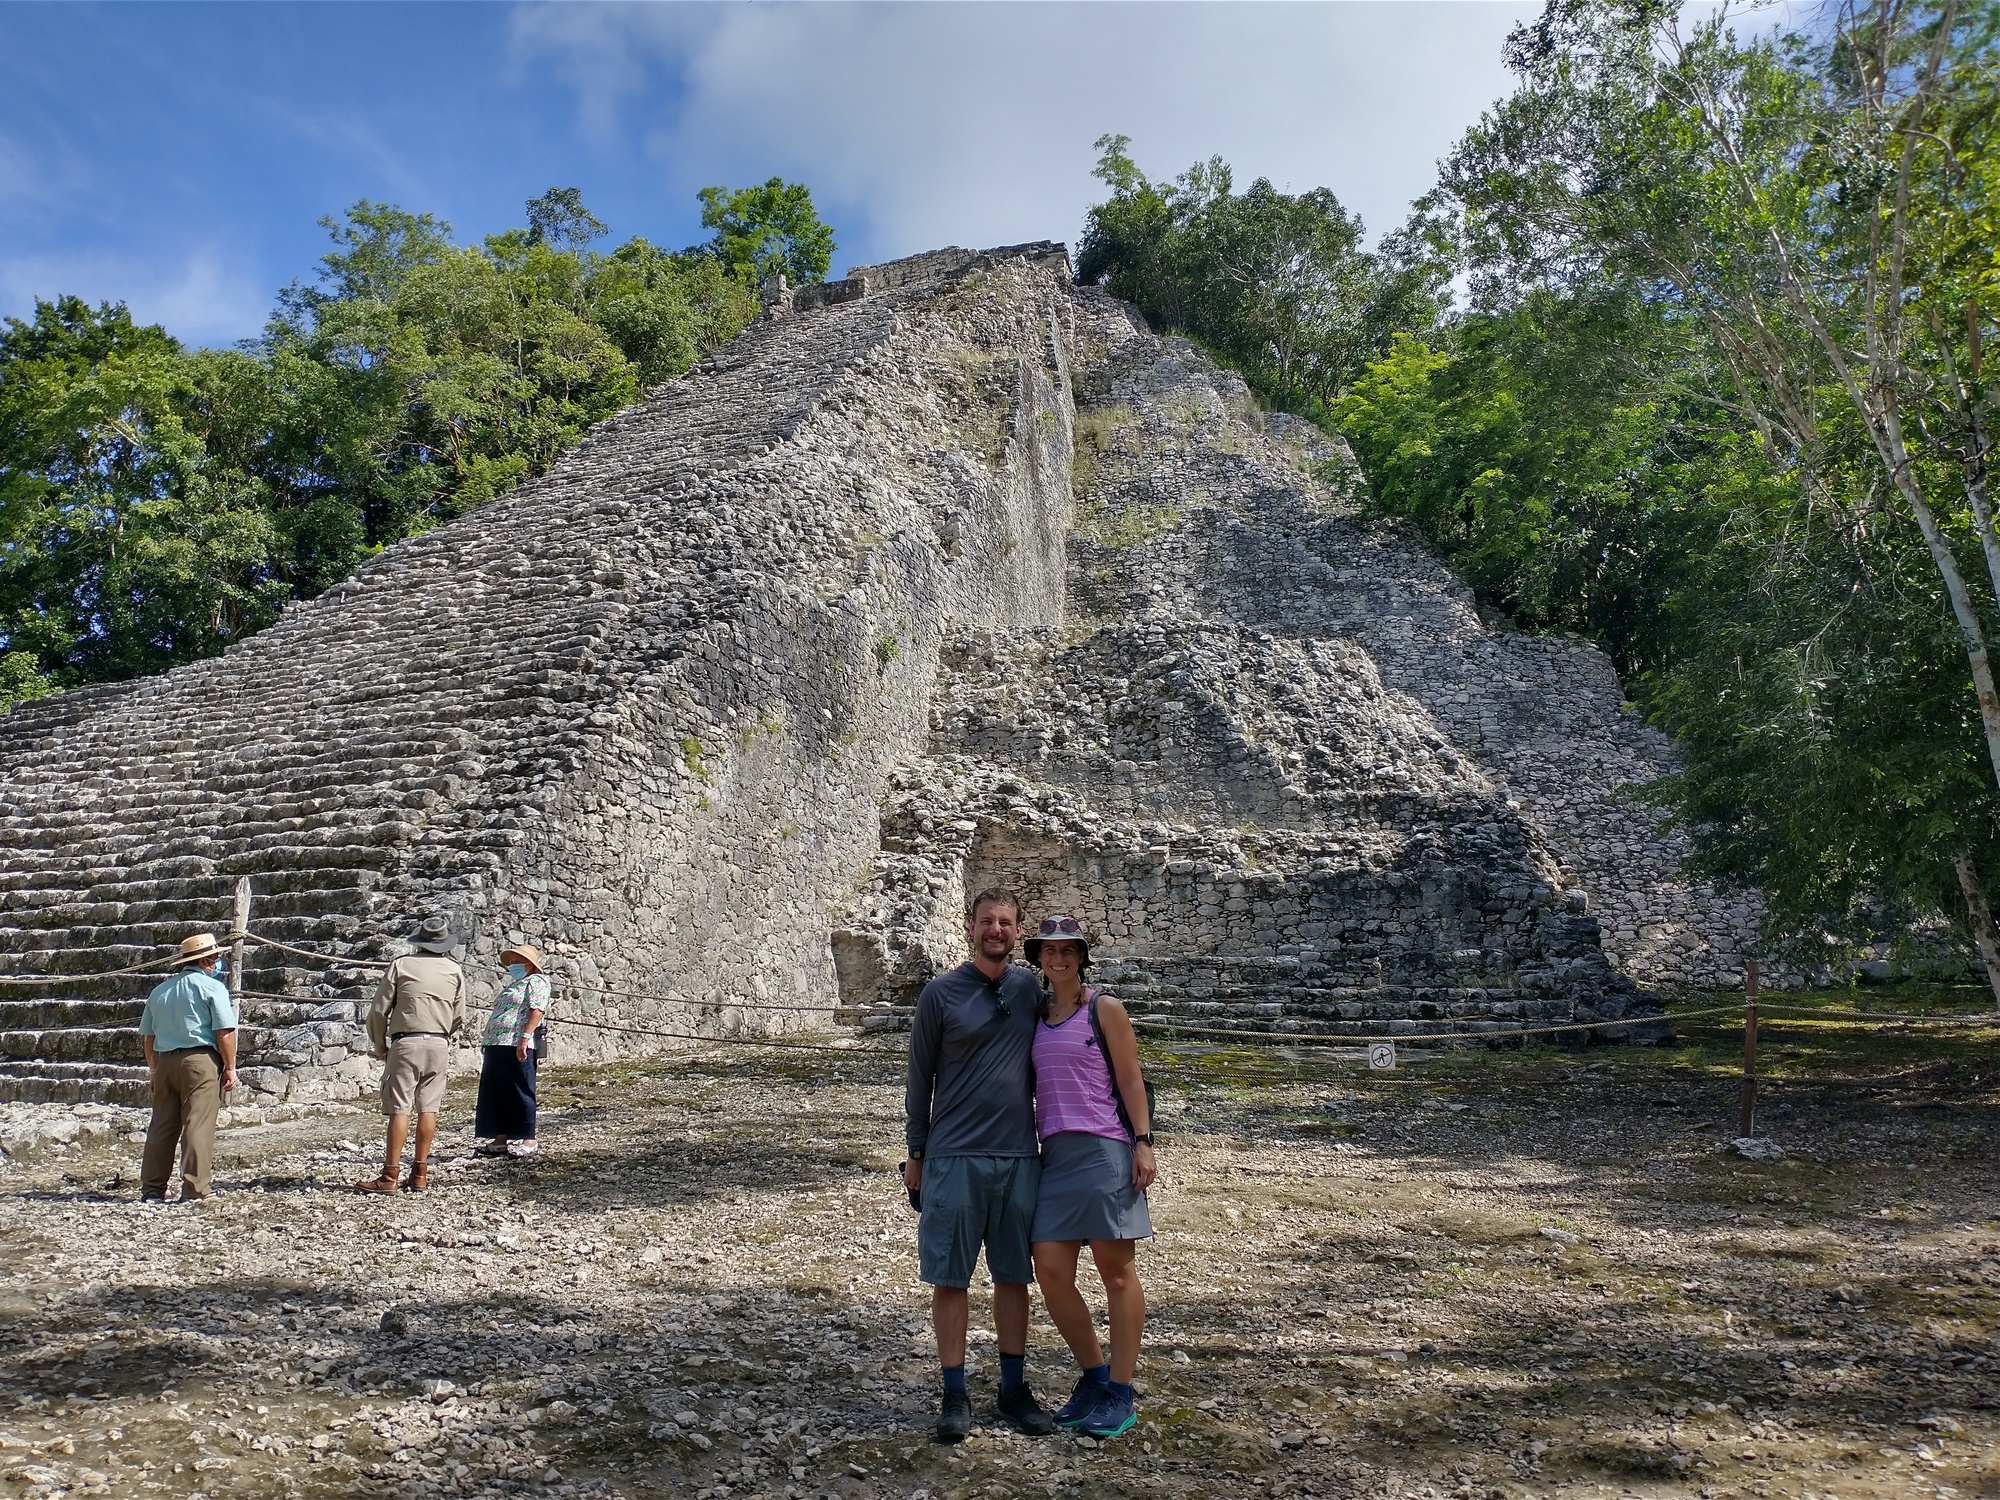 Us at the Ancient Maya city Coba, pronounced cō-bǝ